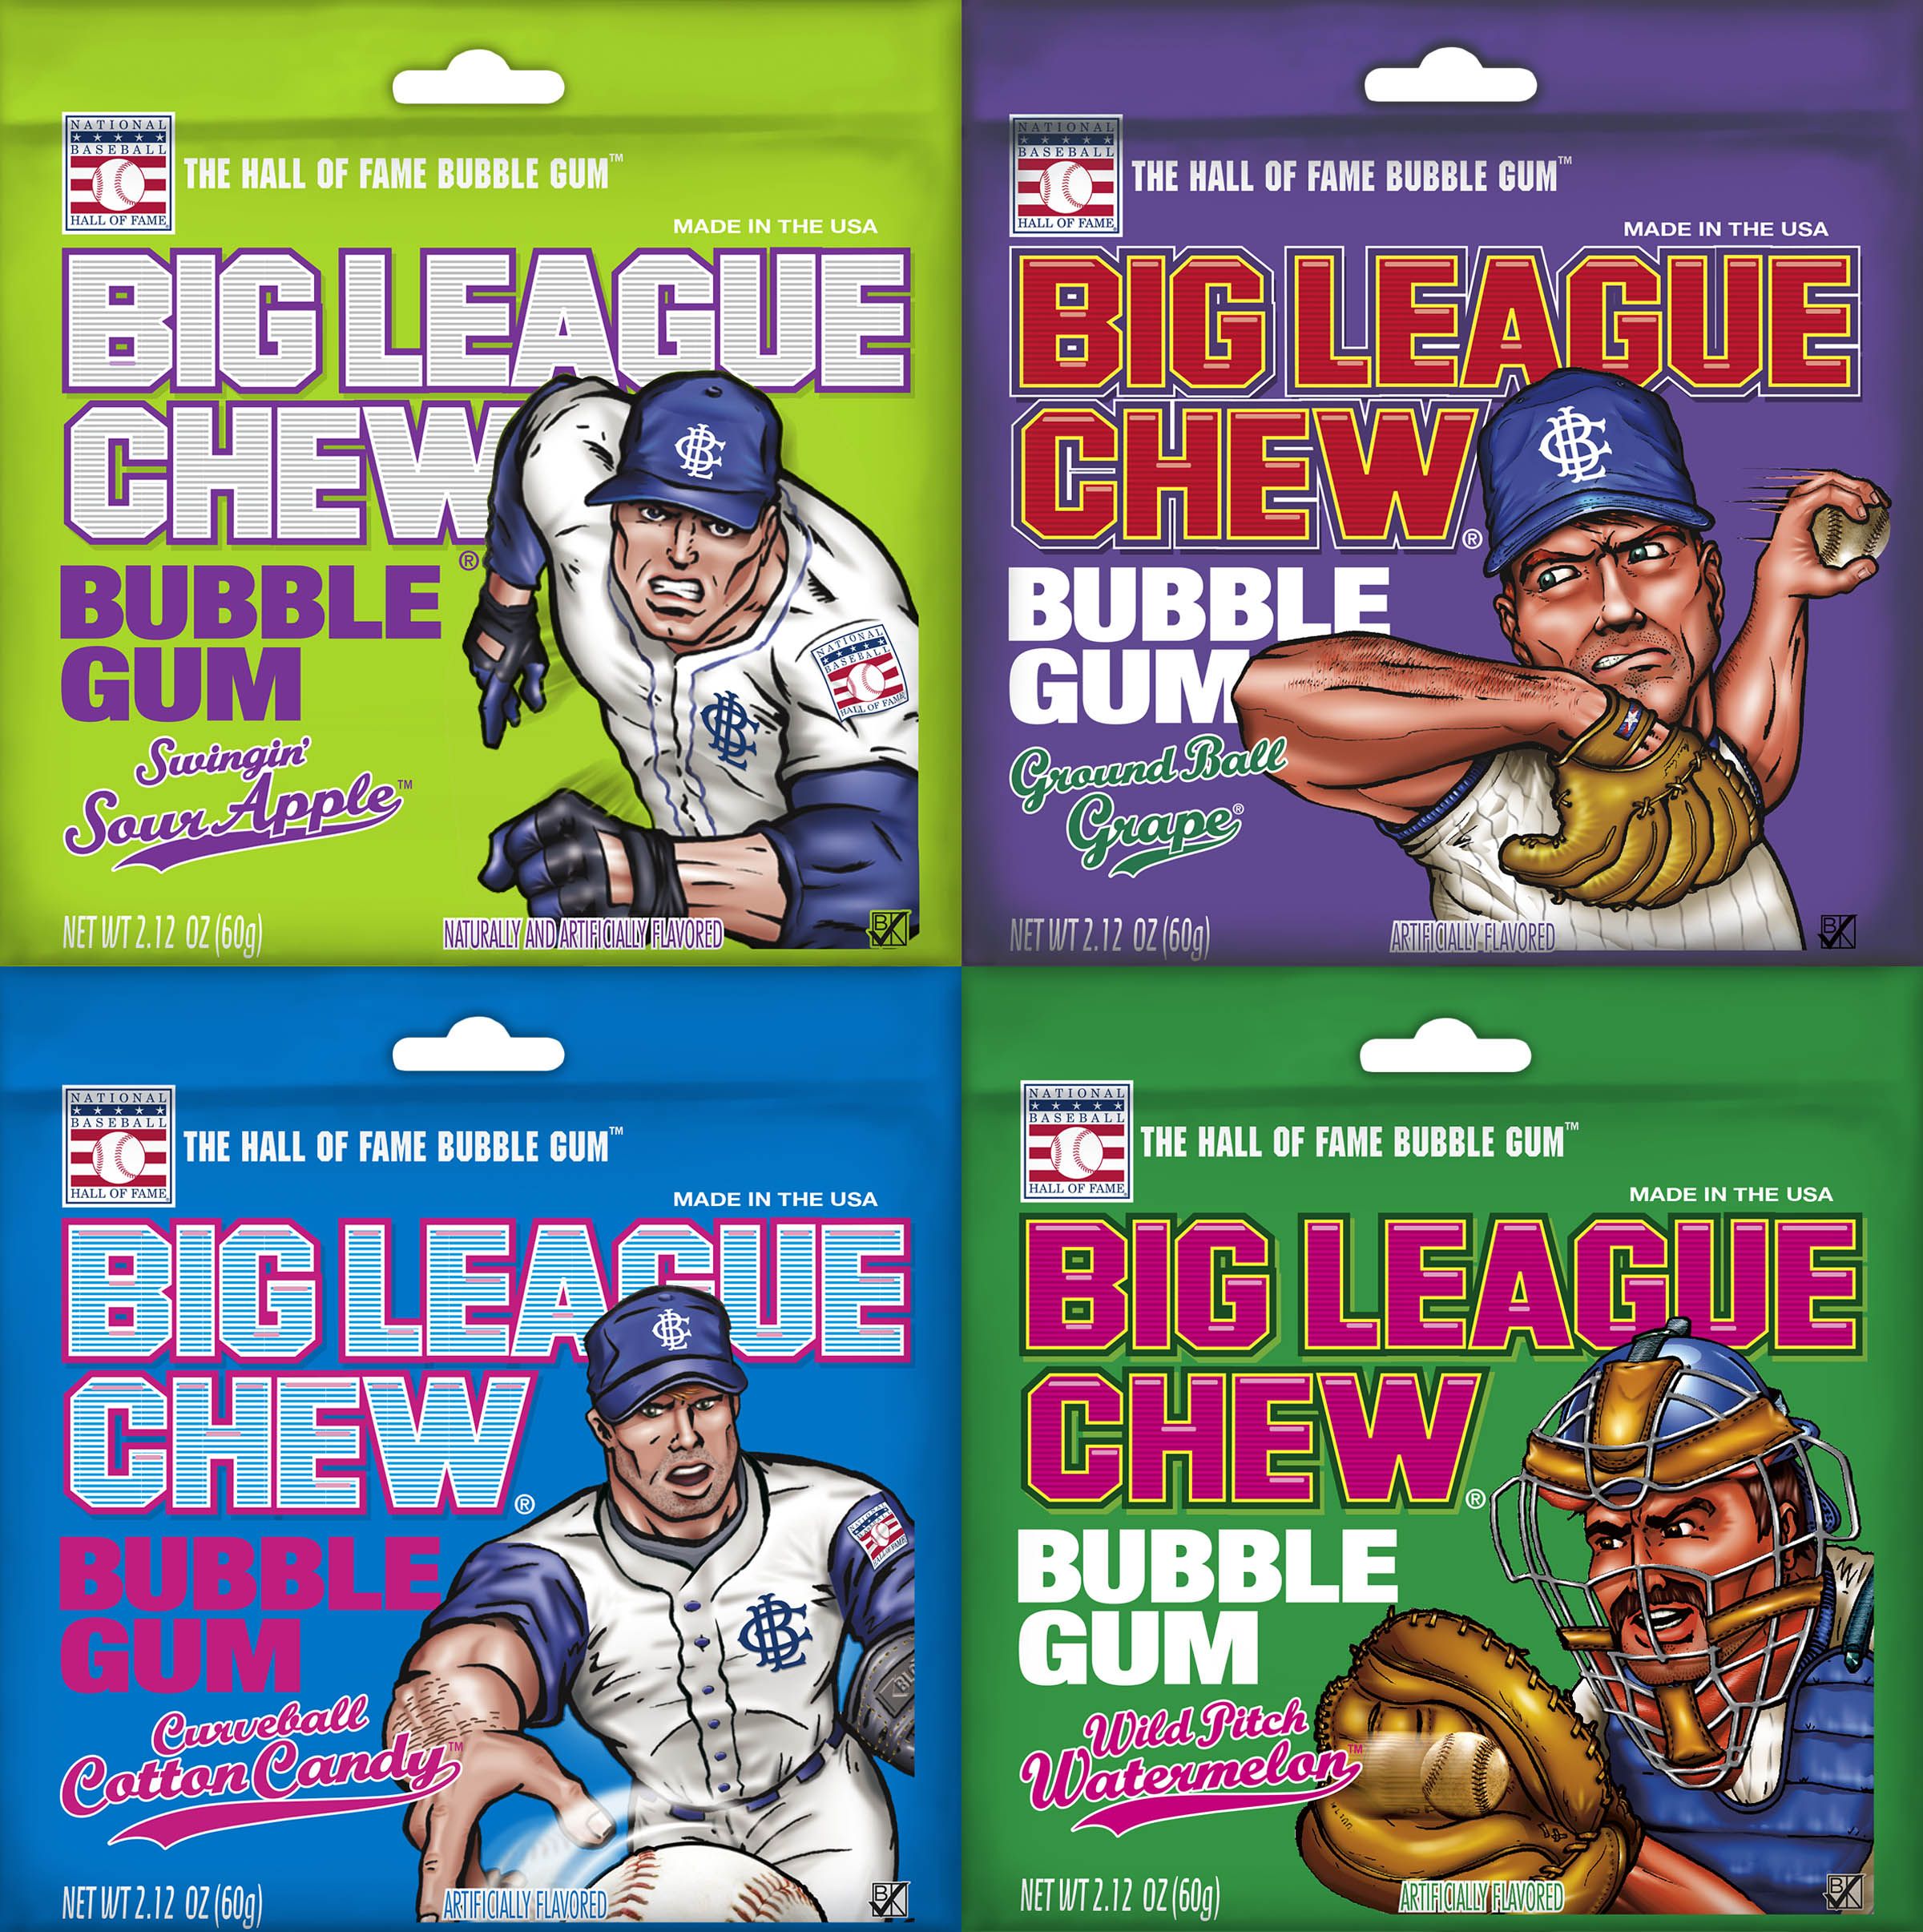 Big League Chew Archives